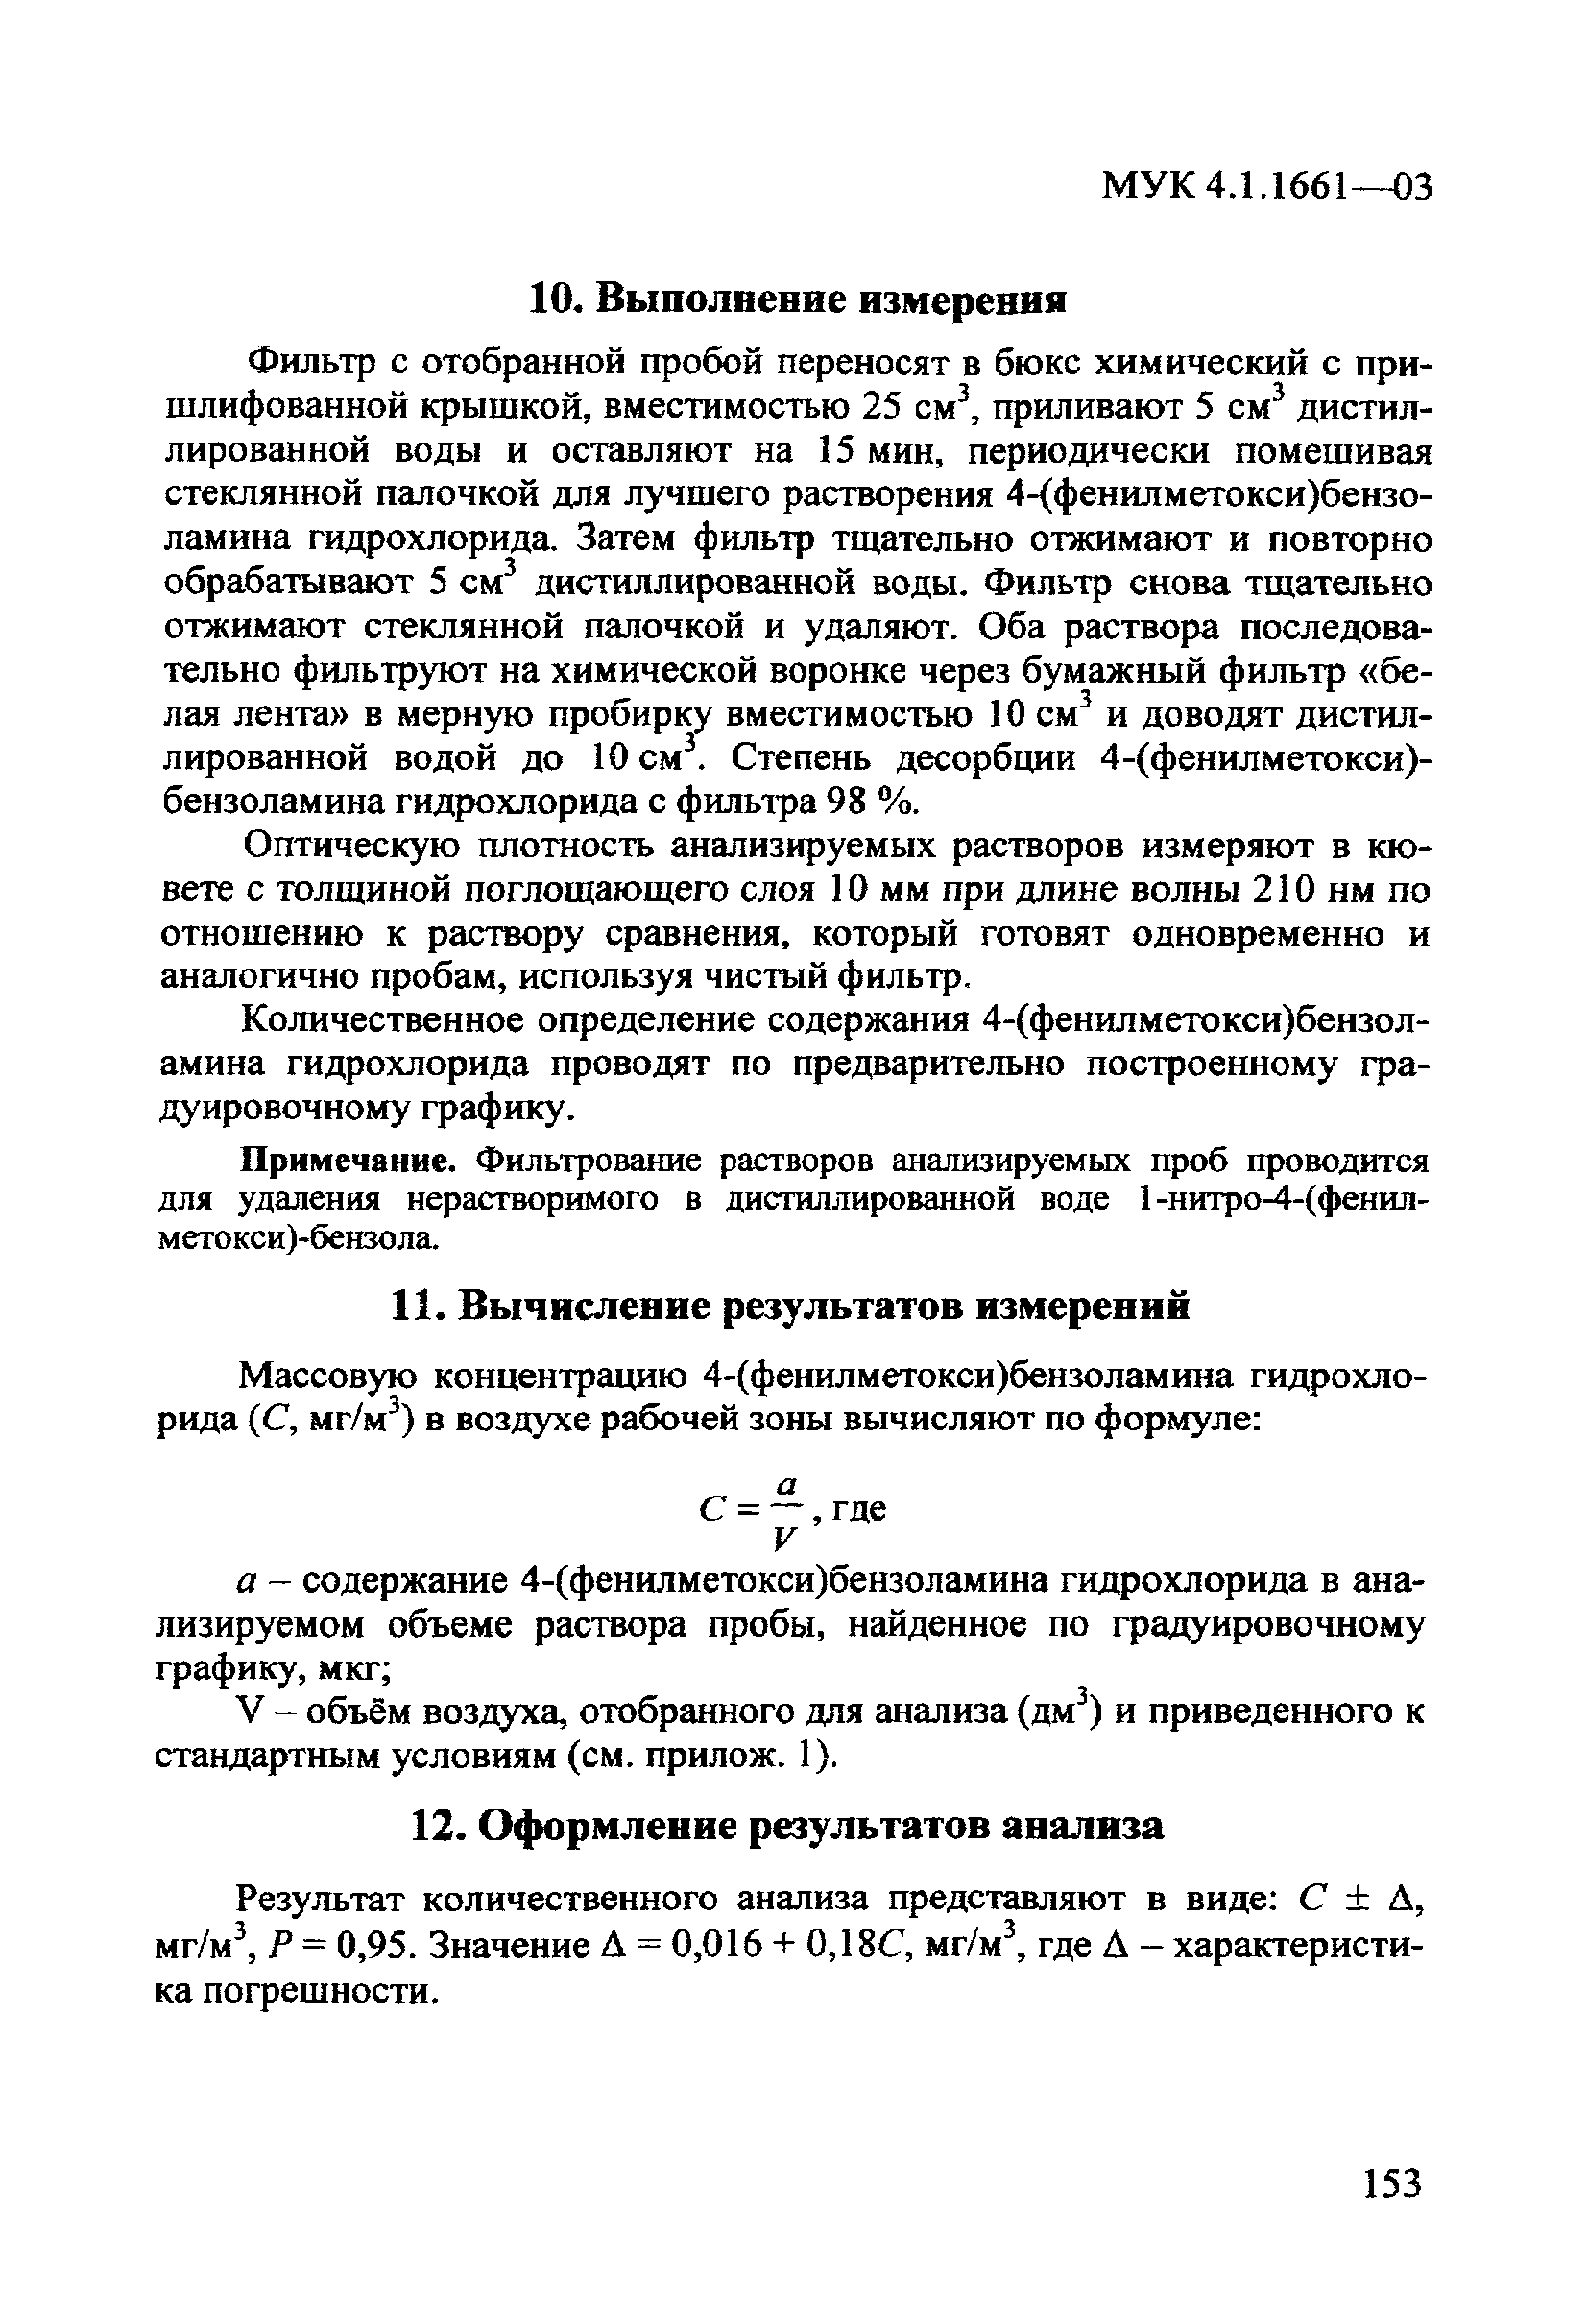 МУК 4.1.1661-03